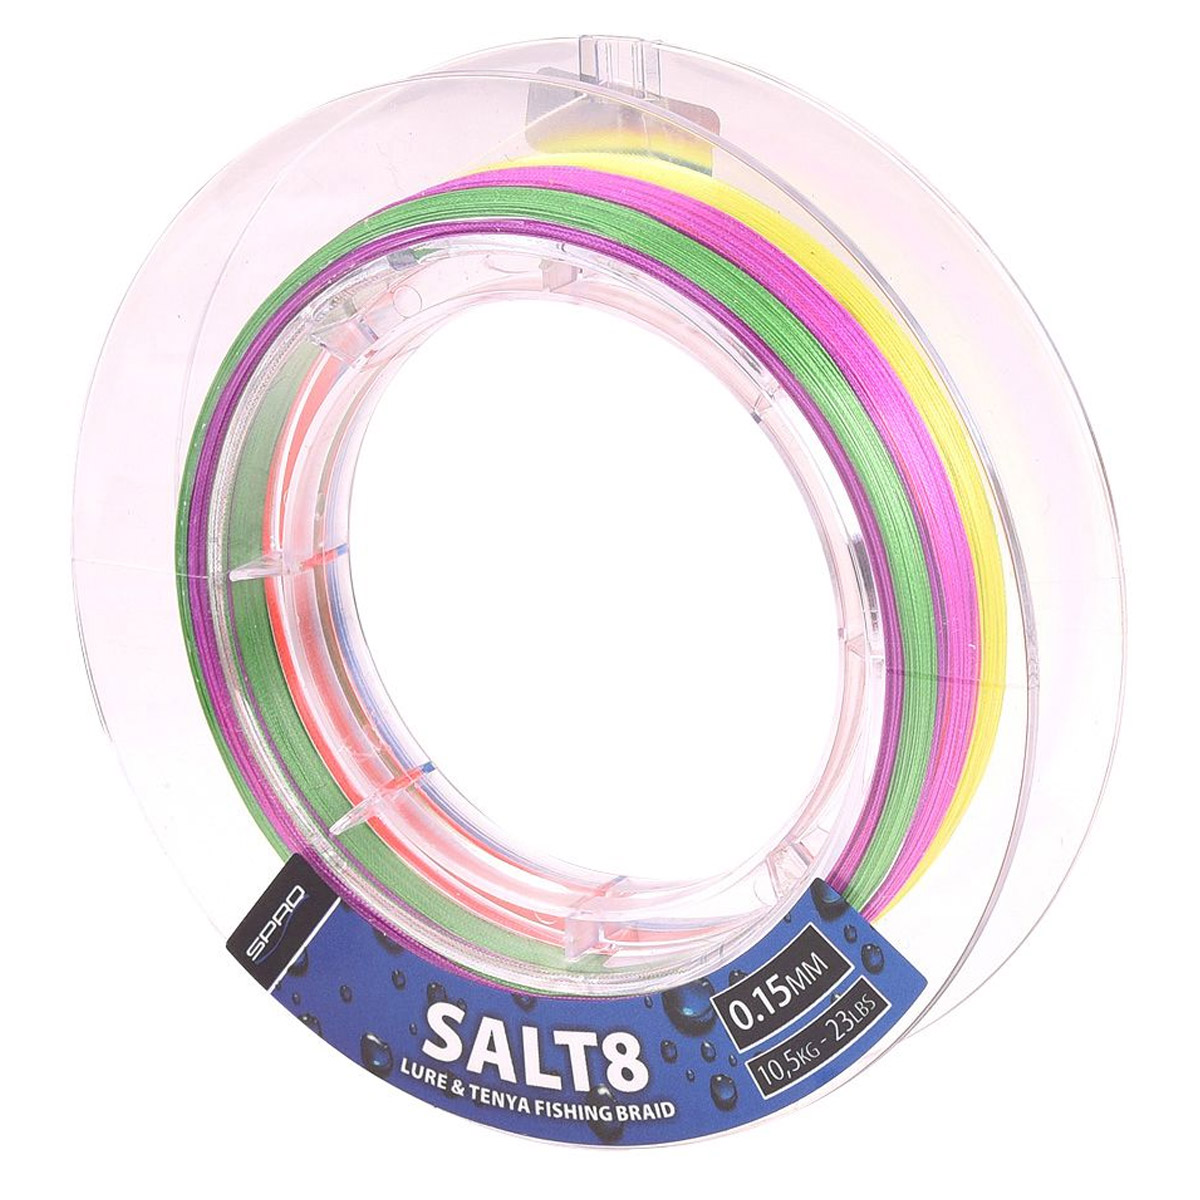 Spro Spex8 Multi-Color Salt 150 Meter -  0.12 mm -  0.15 mm -  0.21 mm -  0.18 mm -  0.24 mm